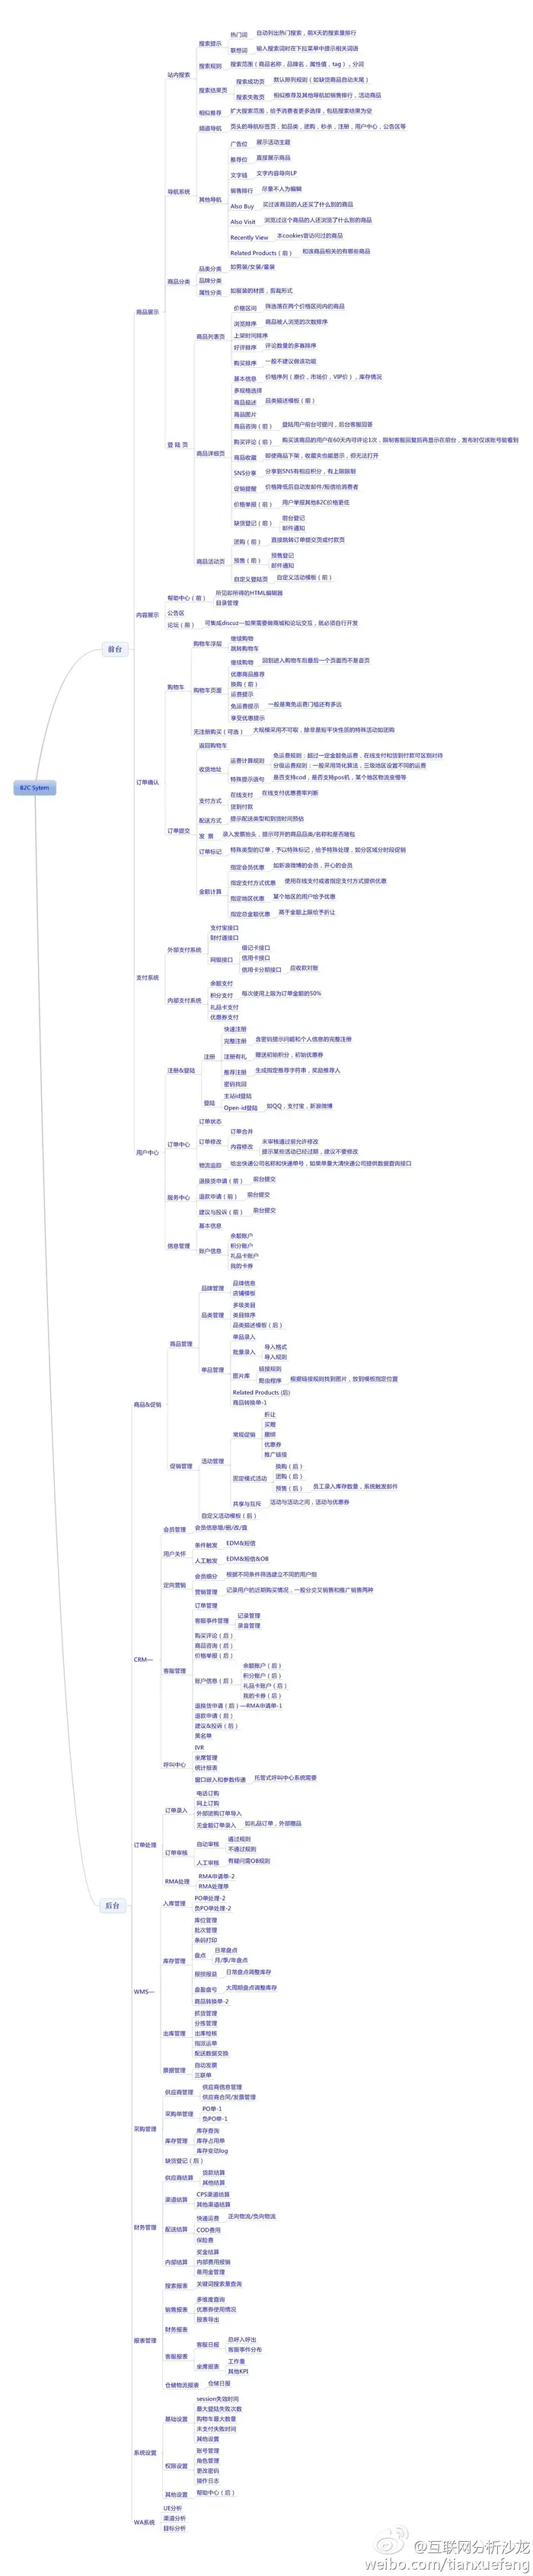 从程序员到CTO的Java技术路线图（转）
            
    
    博客分类： Method cto技术 